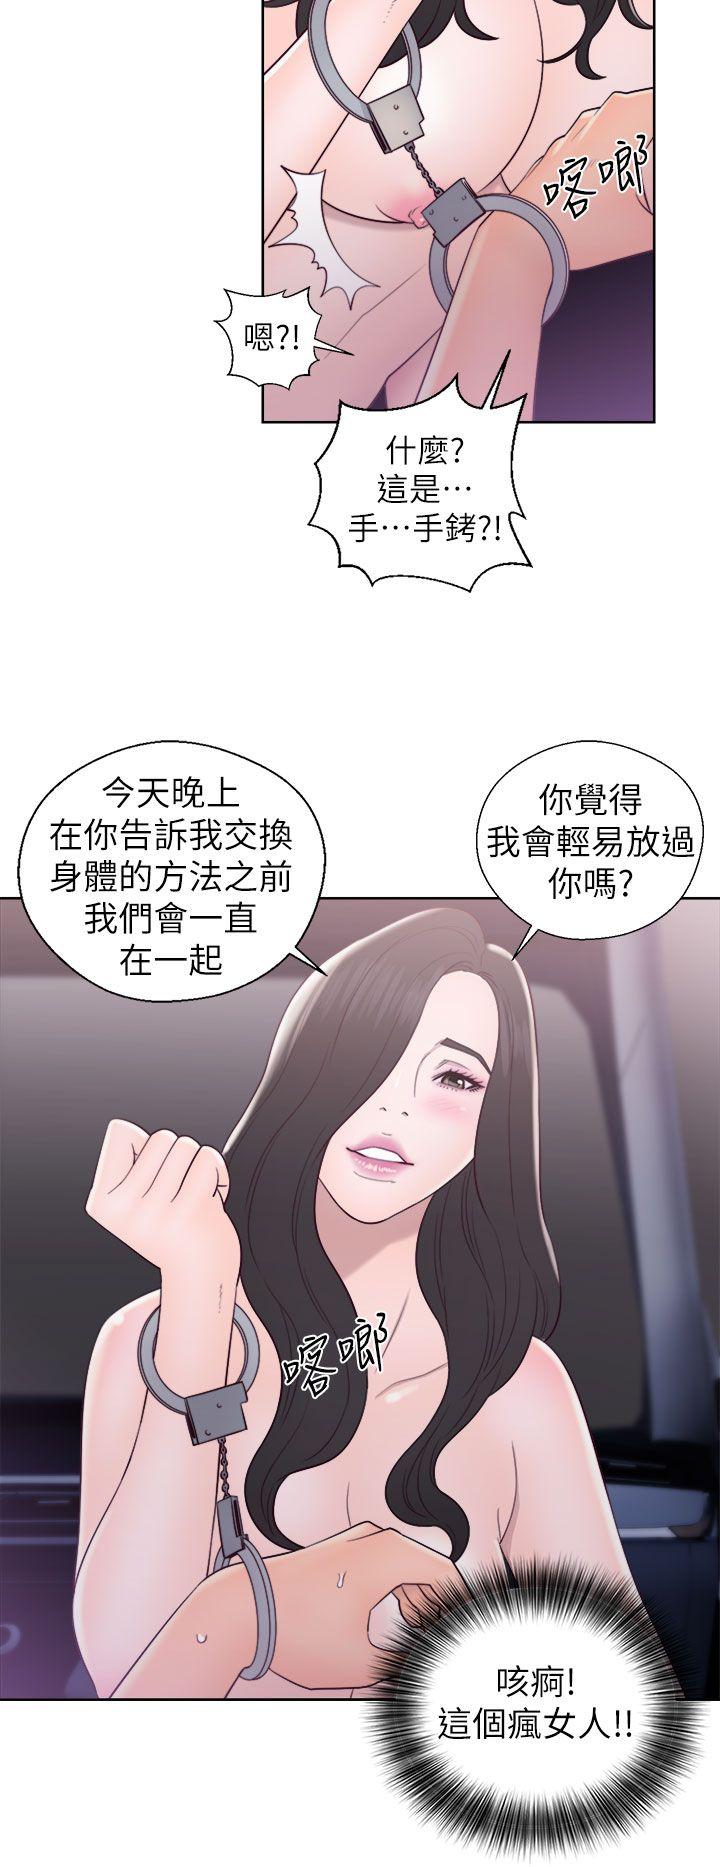 韩国污漫画 青春:逆齡小鮮肉 第19话 36